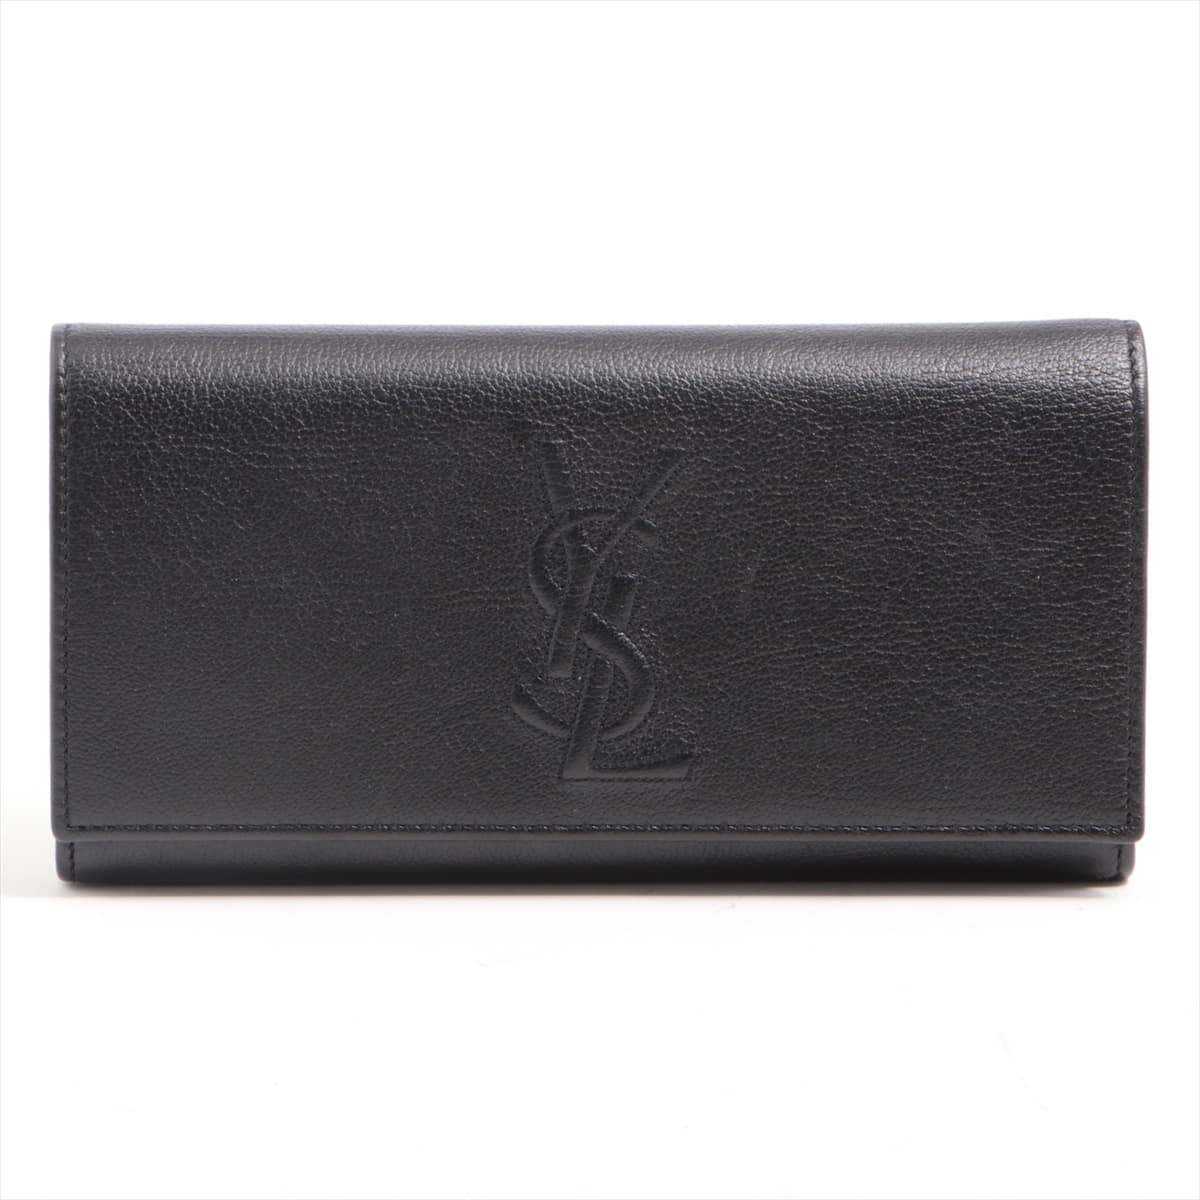 Saint Laurent Paris Logo 352905 Leather Wallet Black